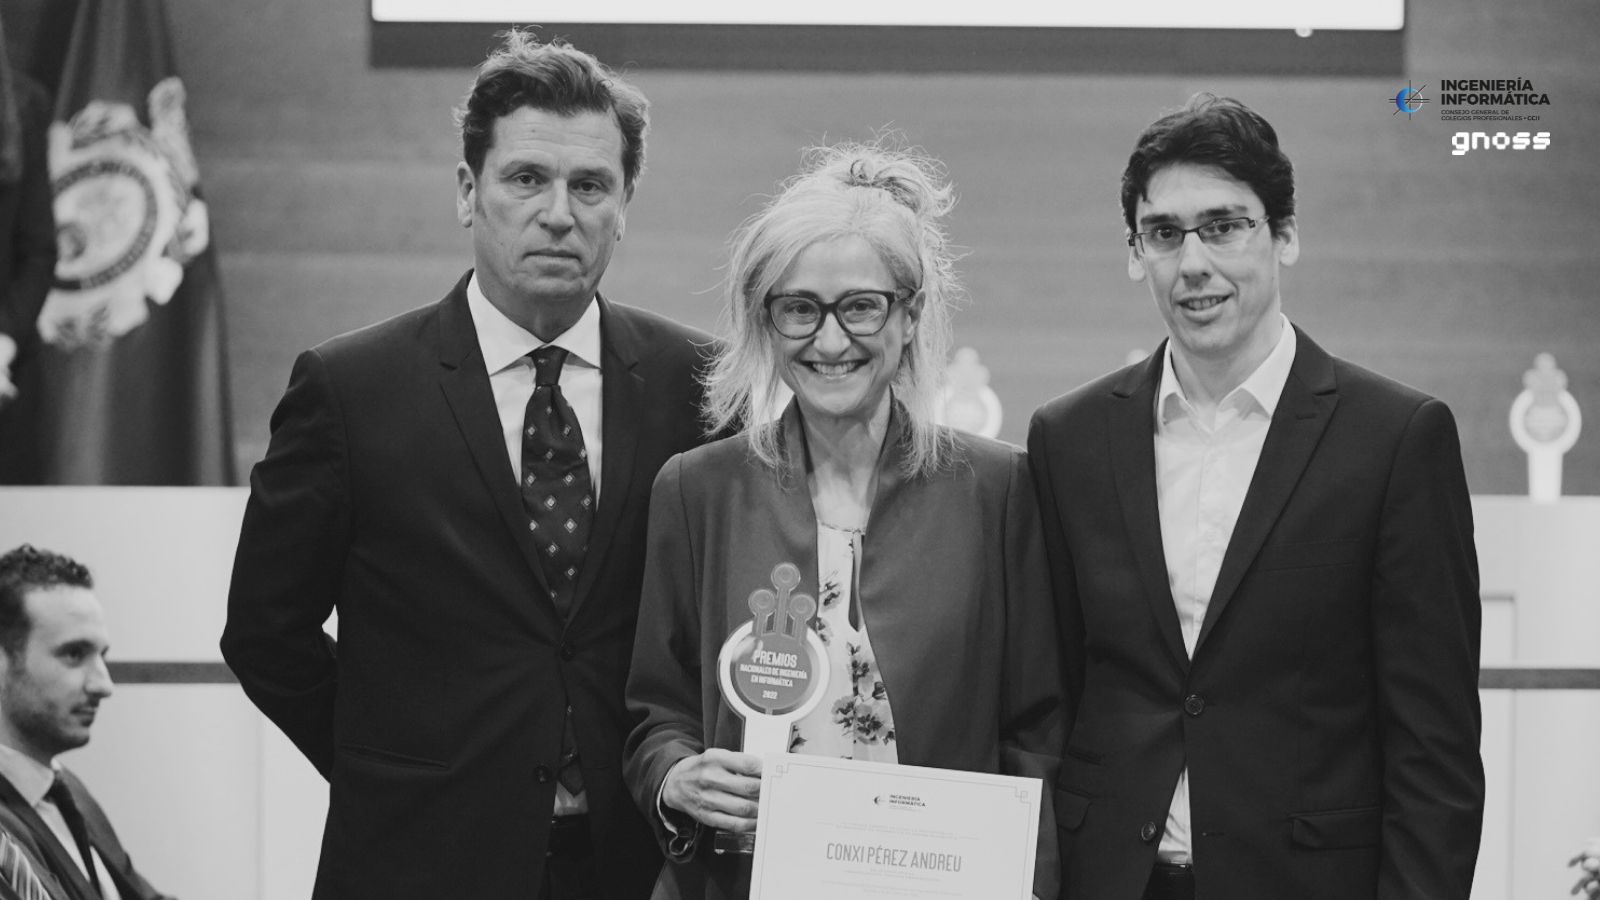 GNOSS patrocina los Premios Nacionales de Ingeniería Informática y otorga el premio 